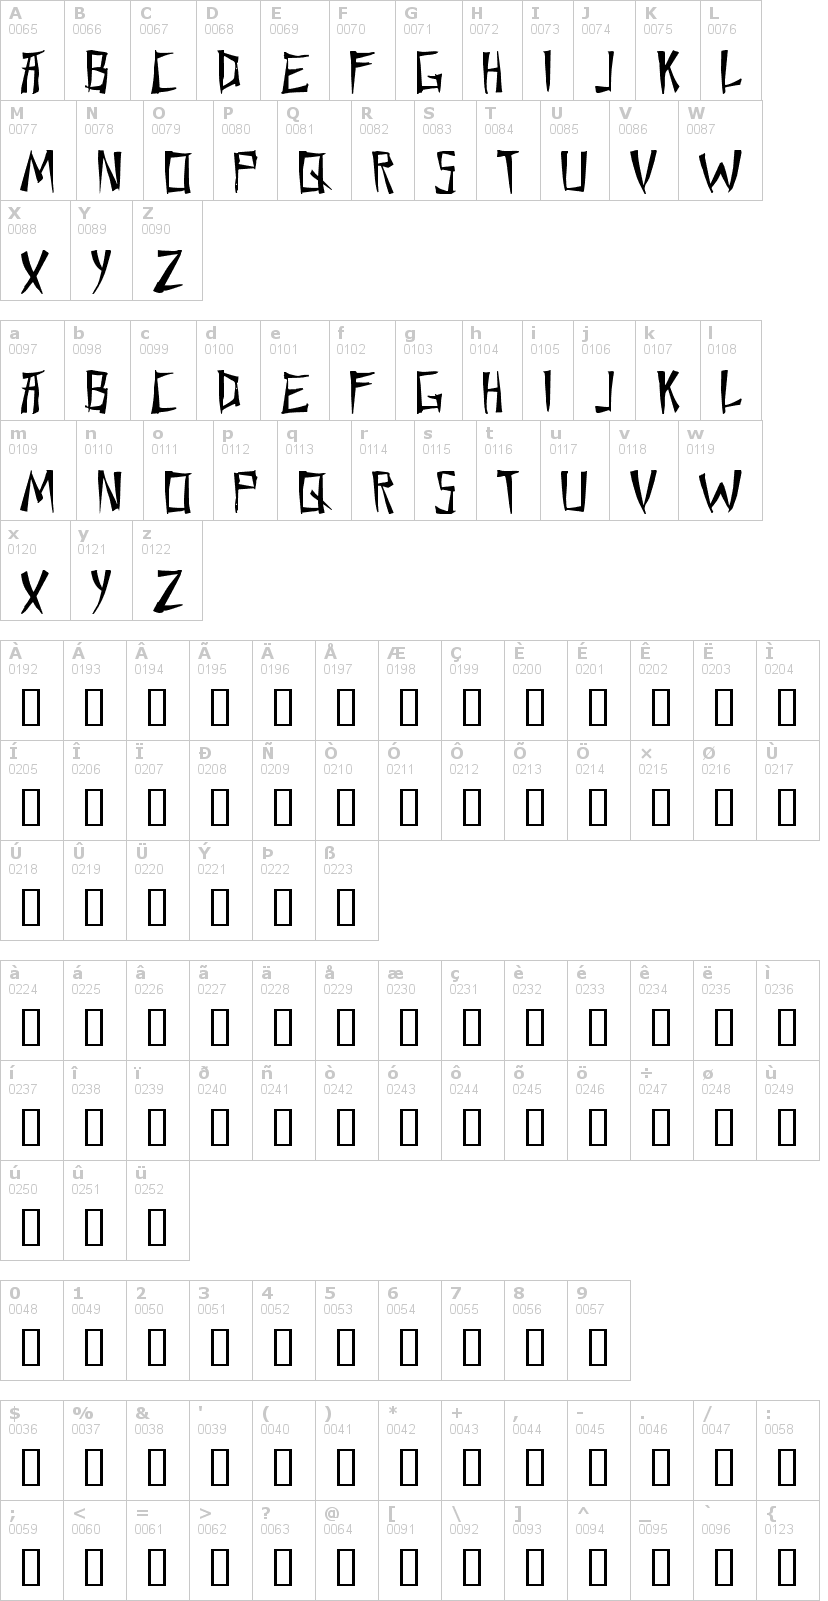 Lettere dell'alfabeto del font chang-and-eng con le quali è possibile realizzare adesivi prespaziati